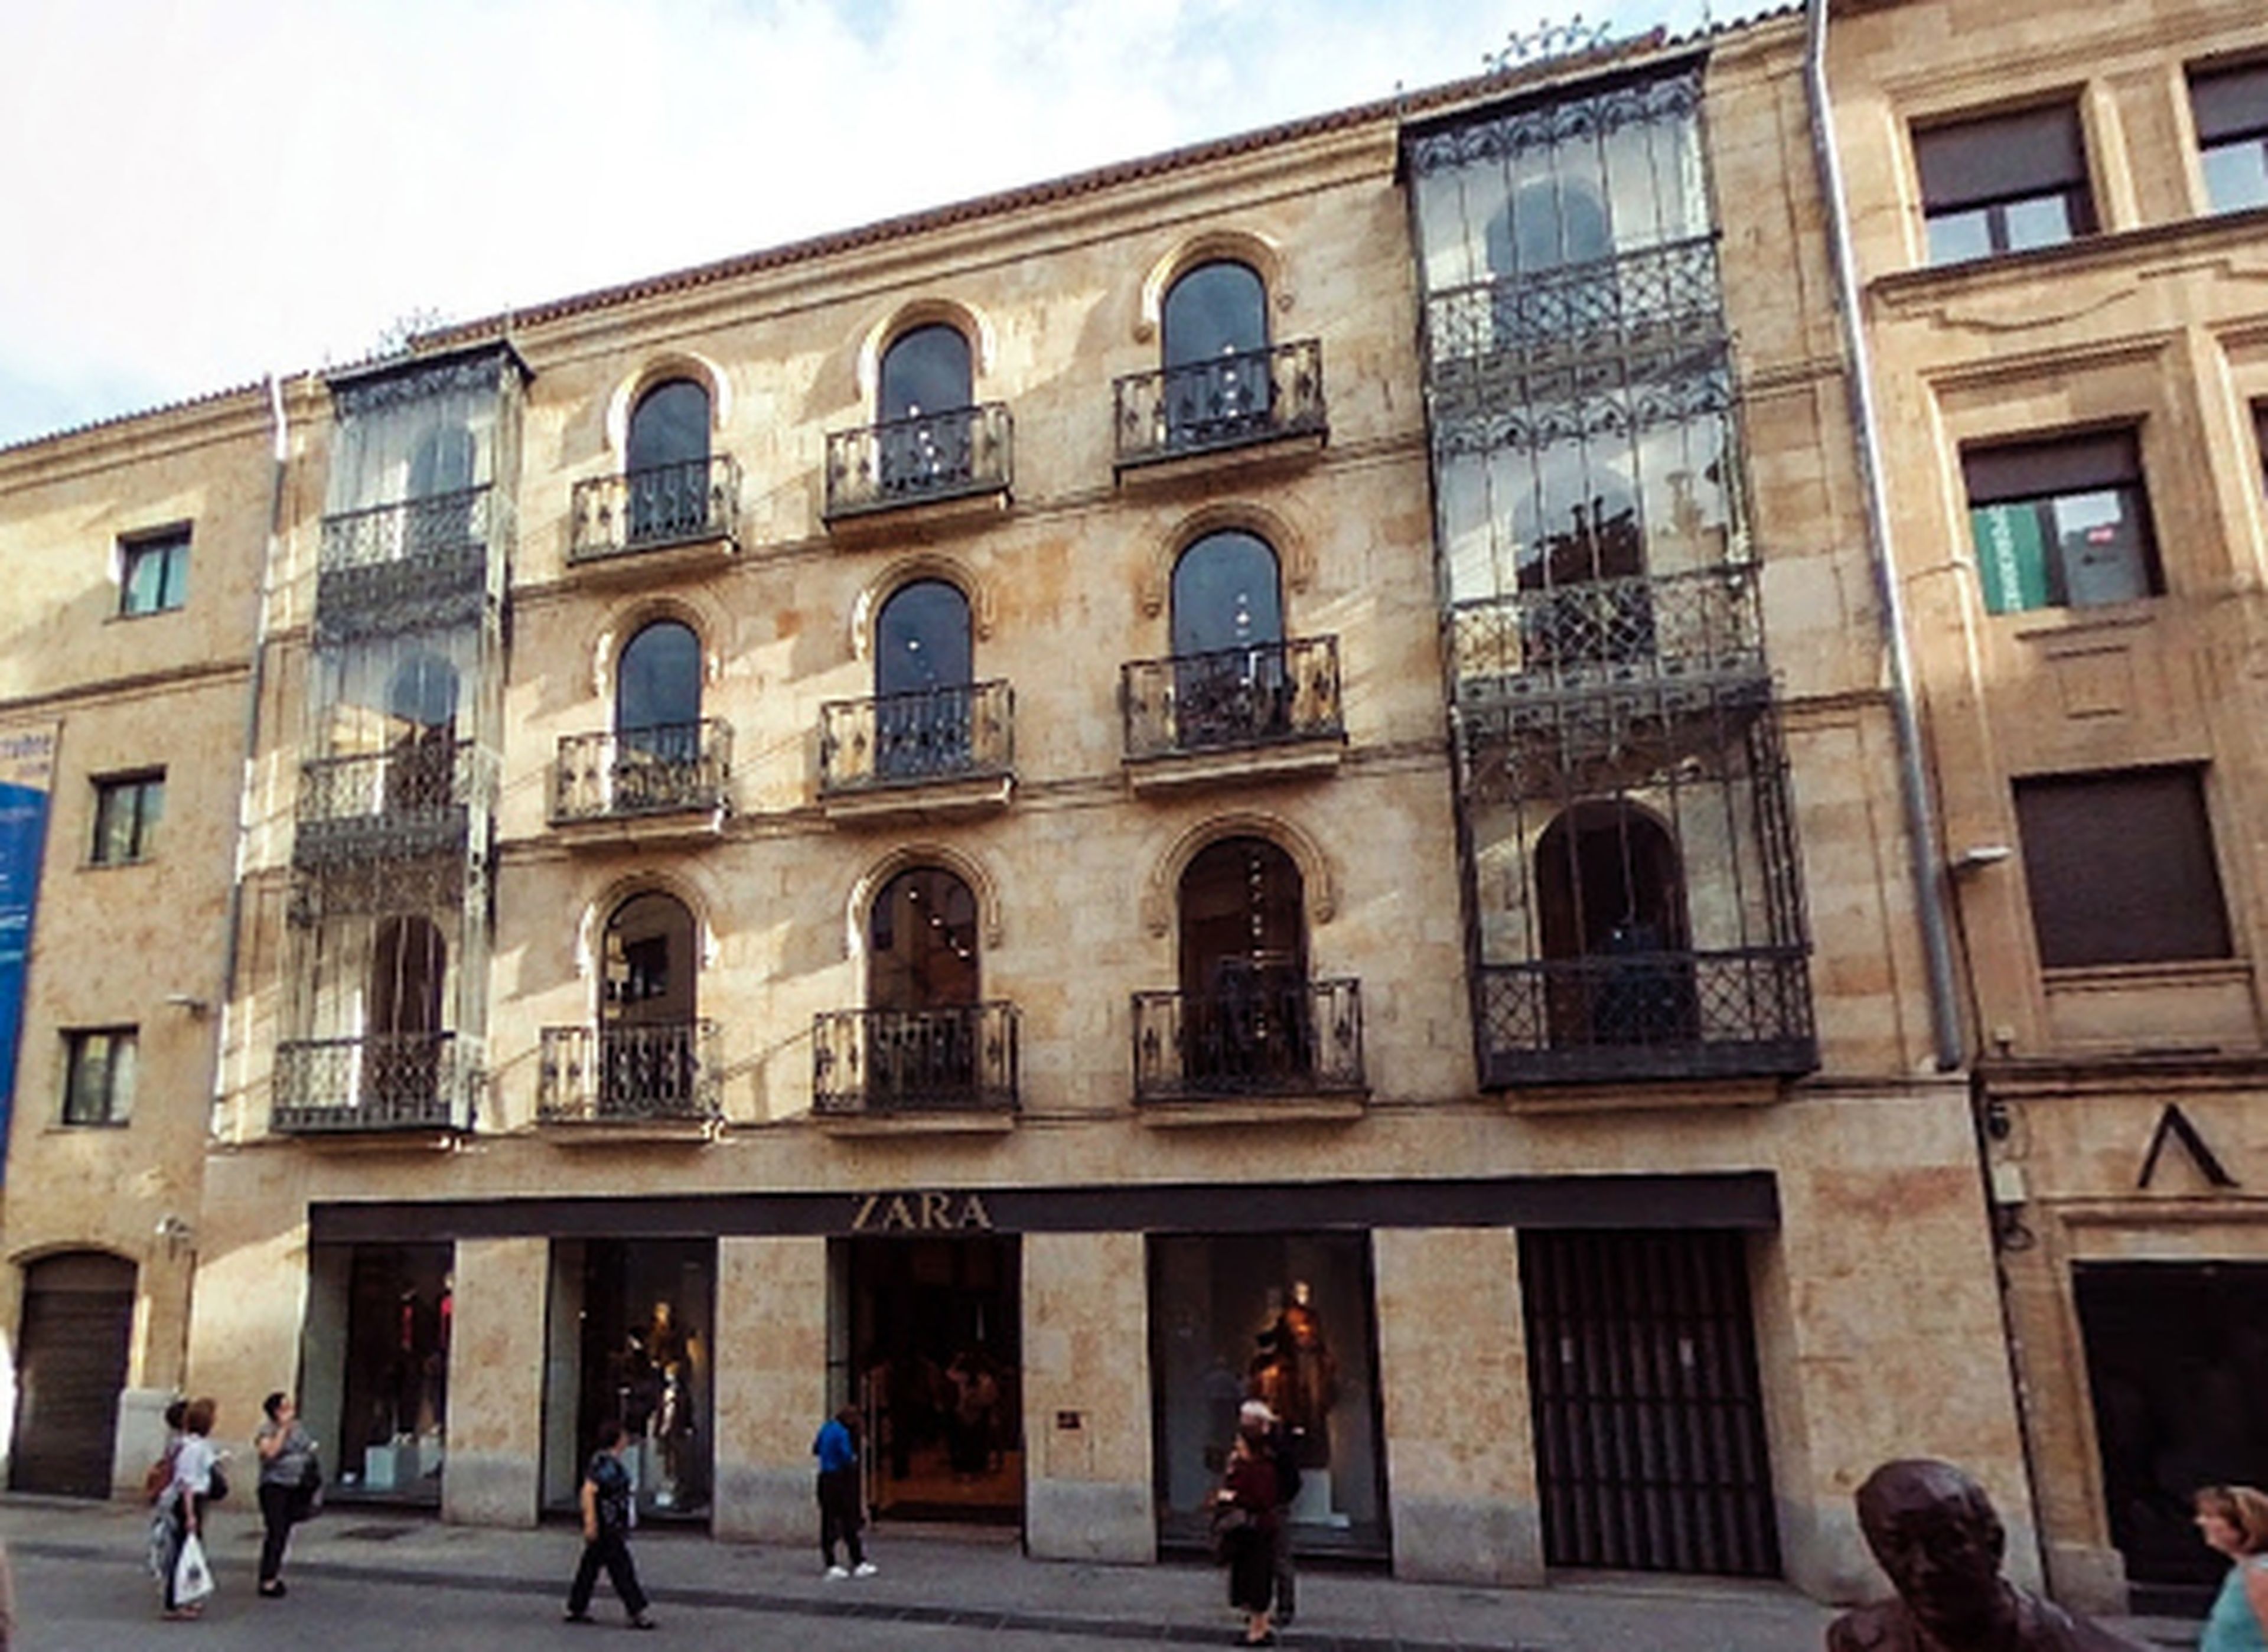 Tienda Zara en Salamanca